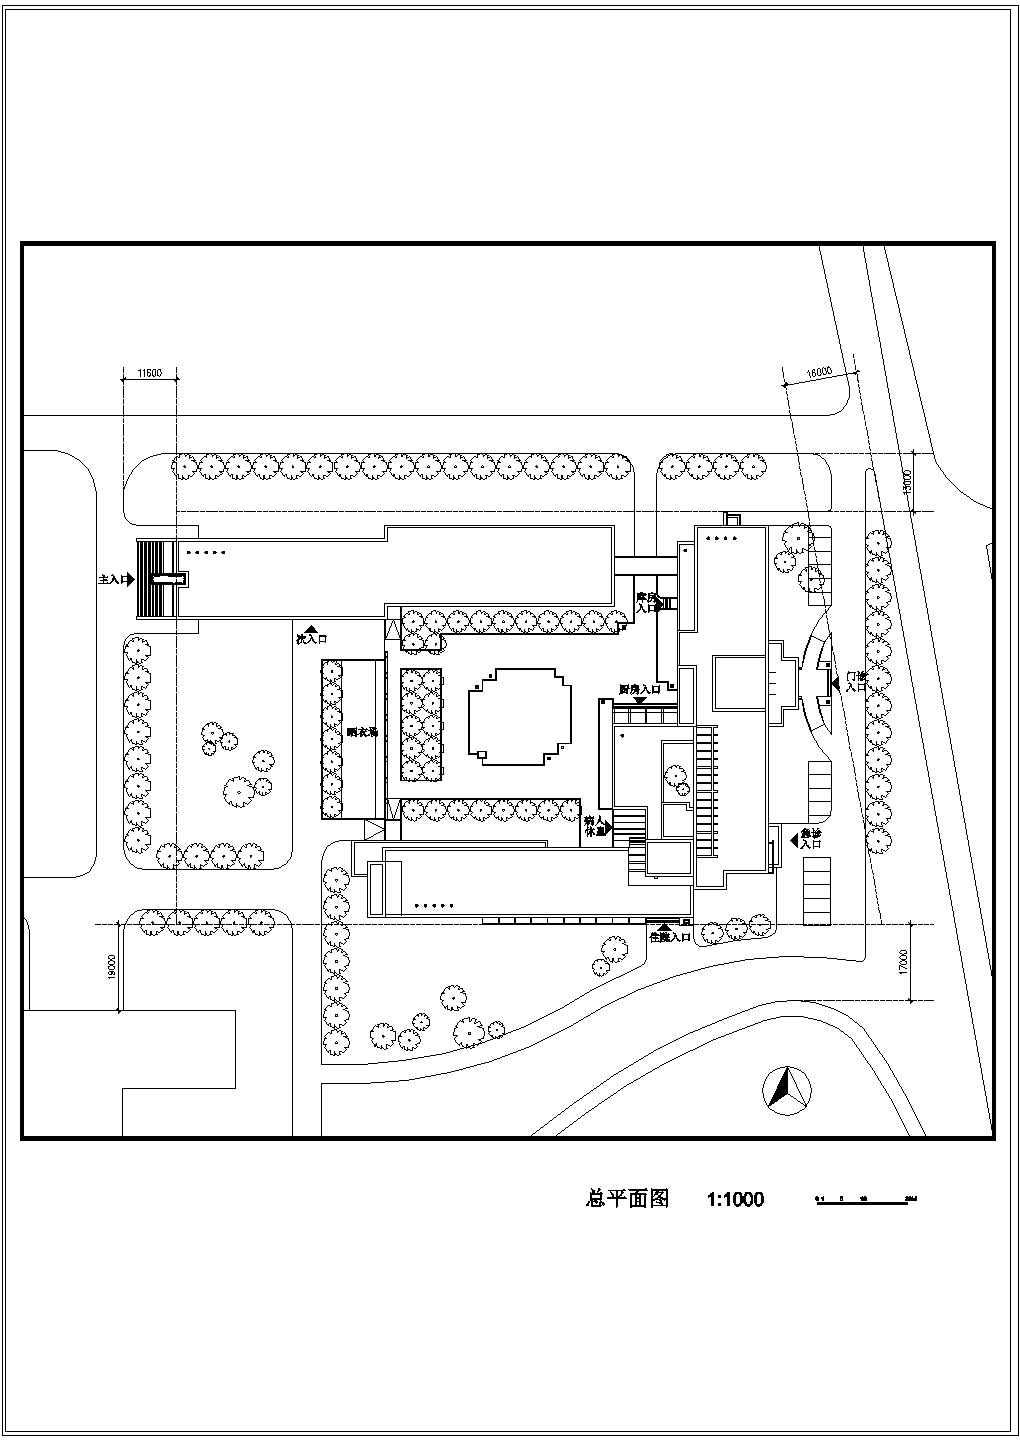 滨州职业技术学院五层医学实验楼建筑方案cad施工图纸